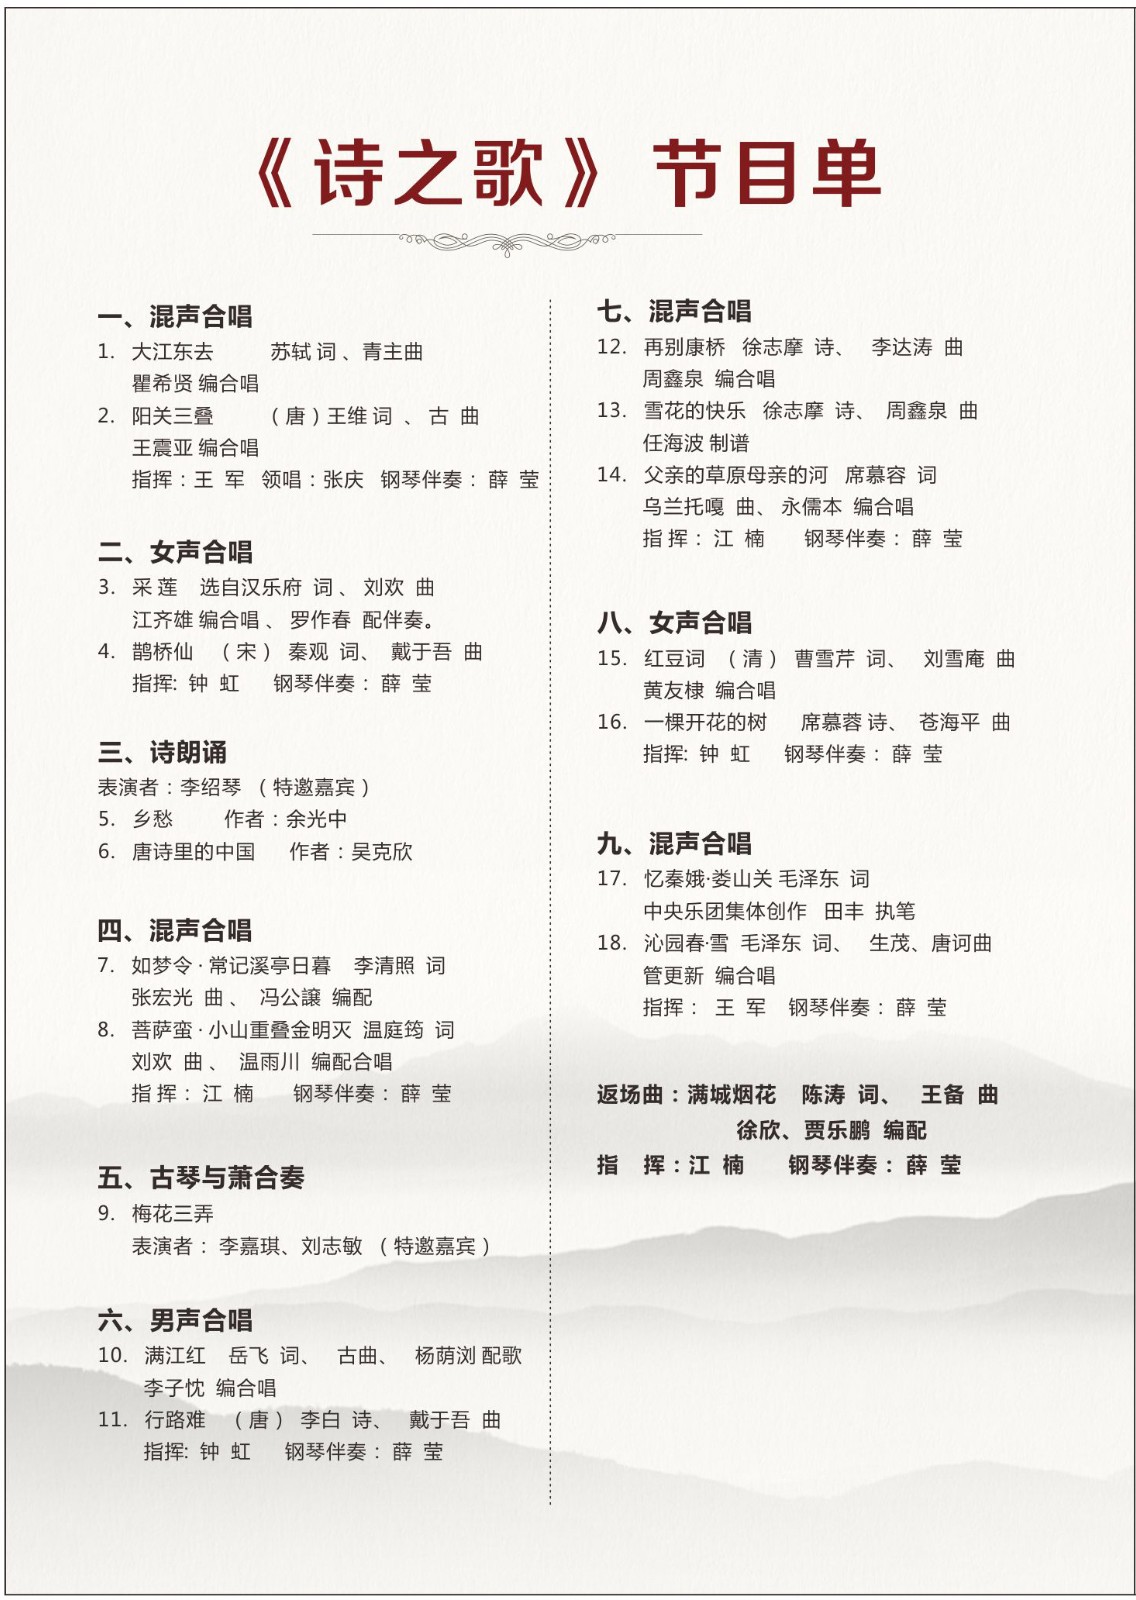 中国古今诗词歌赋 合唱音乐会专场 演出 深圳数字文化馆